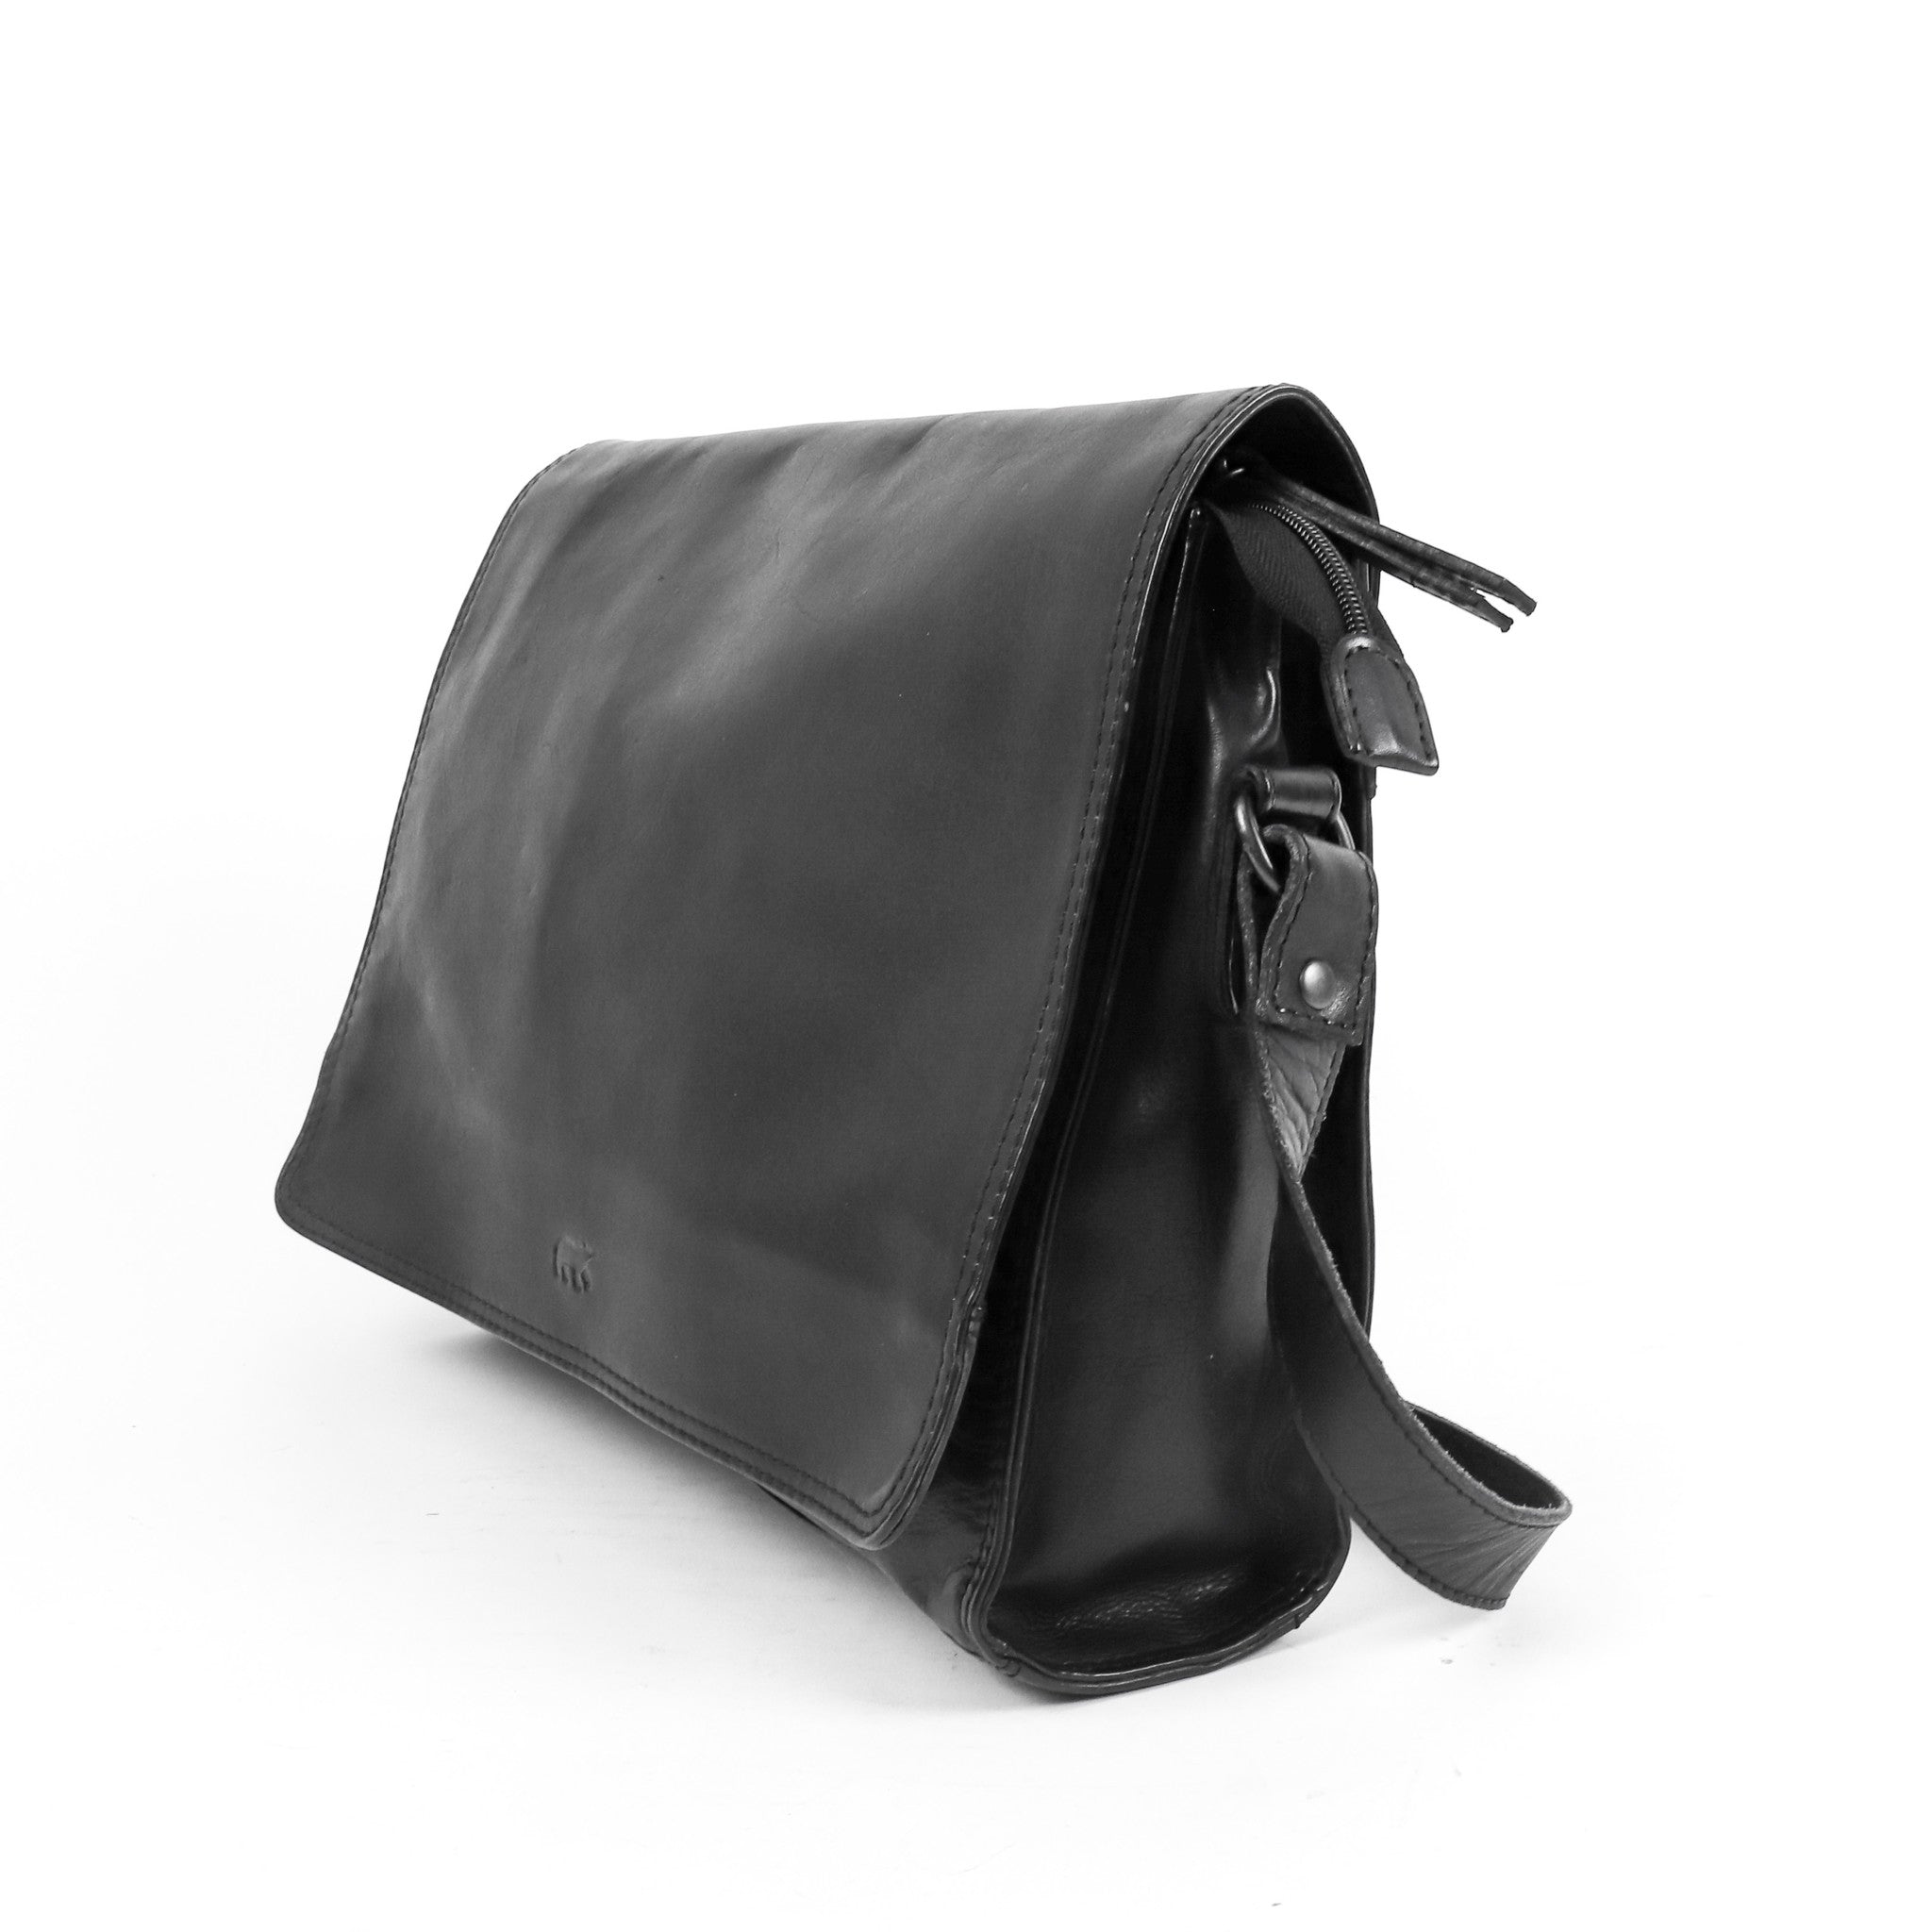 Shoulder bag 'Hanna' black - CL 40027